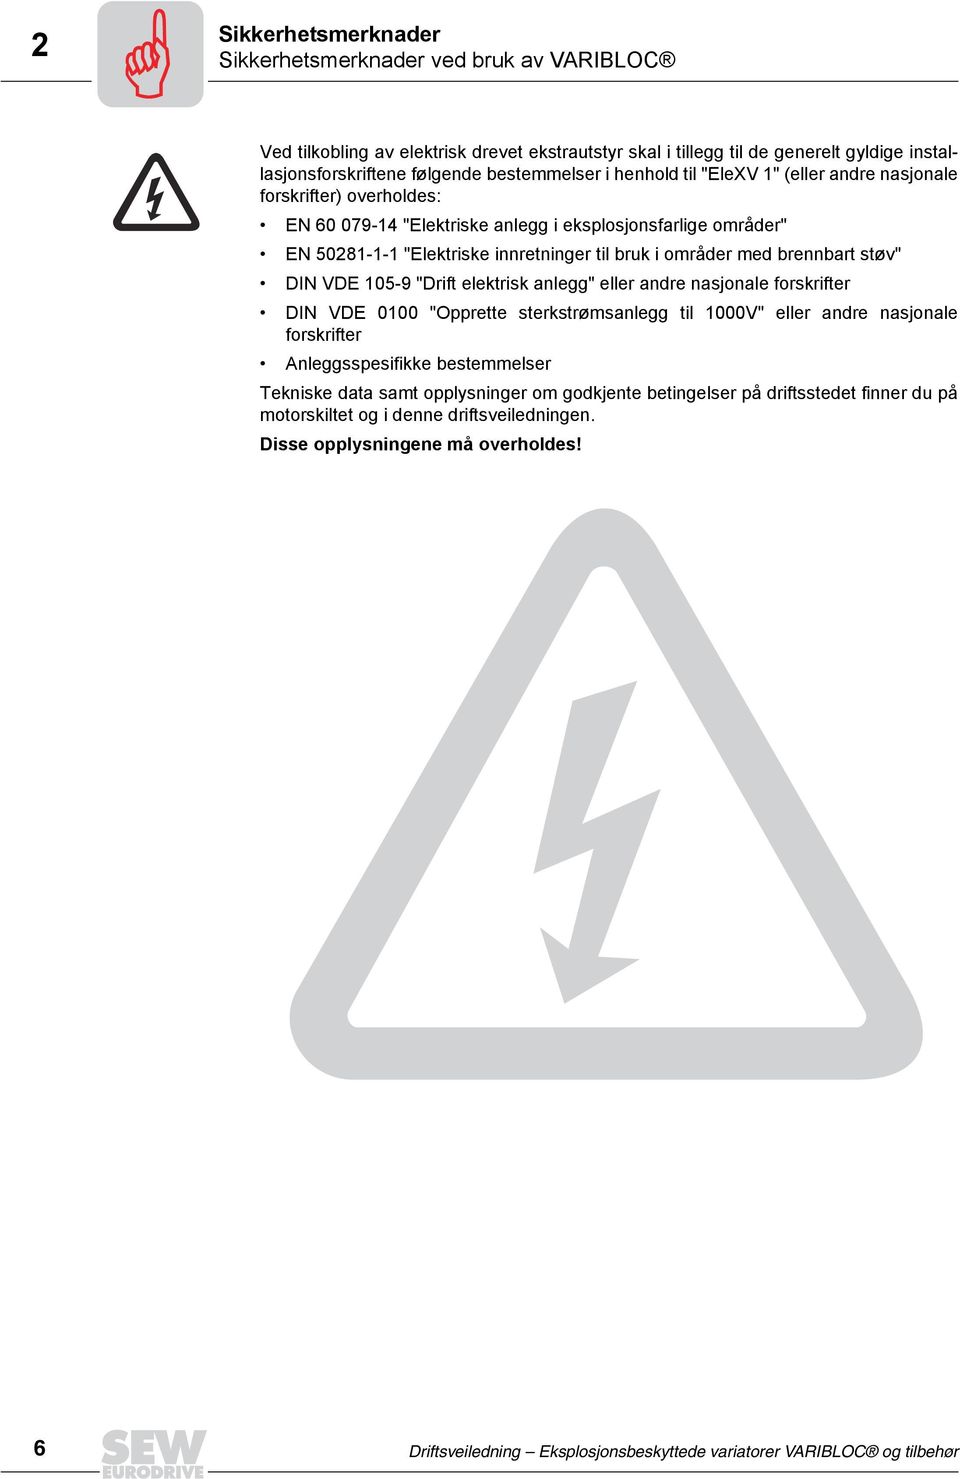 brennbart støv" DIN VDE 105-9 "Drift elektrisk anlegg" eller andre nasjonale forskrifter DIN VDE 0100 "Opprette sterkstrømsanlegg til 1000V" eller andre nasjonale forskrifter Anleggsspesifikke